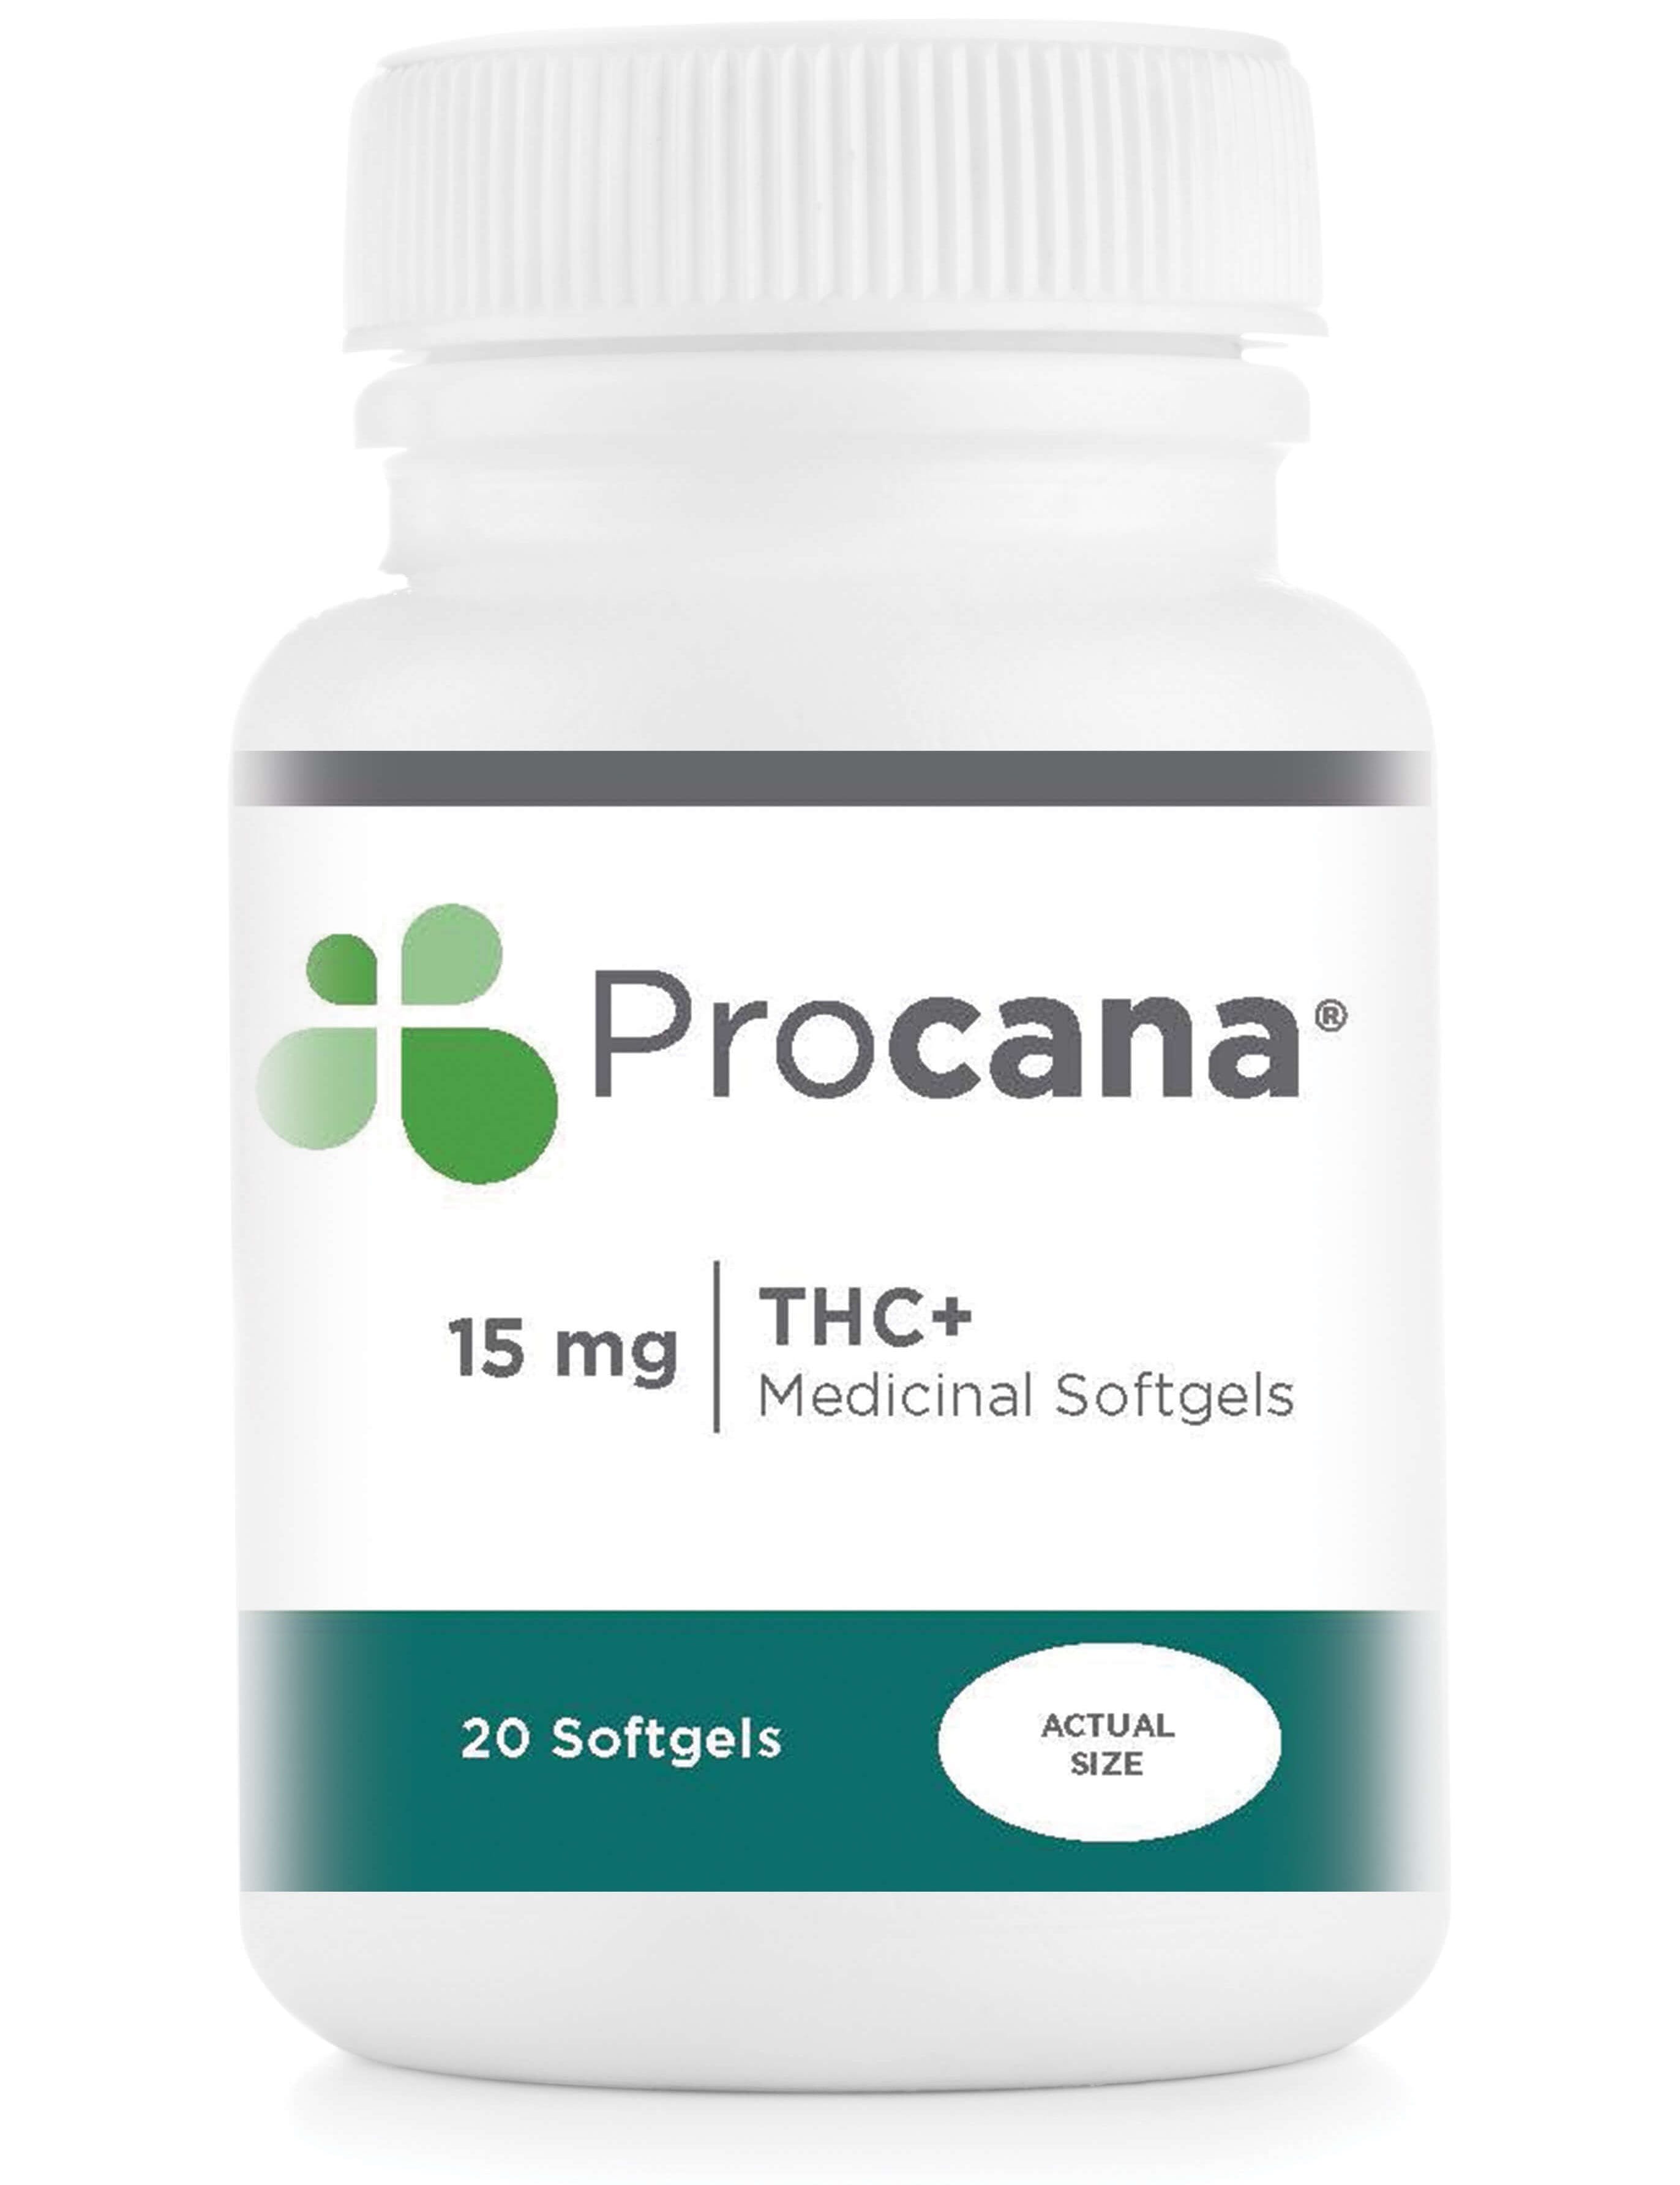 edible-procana-softgels-thc-2b-15mg